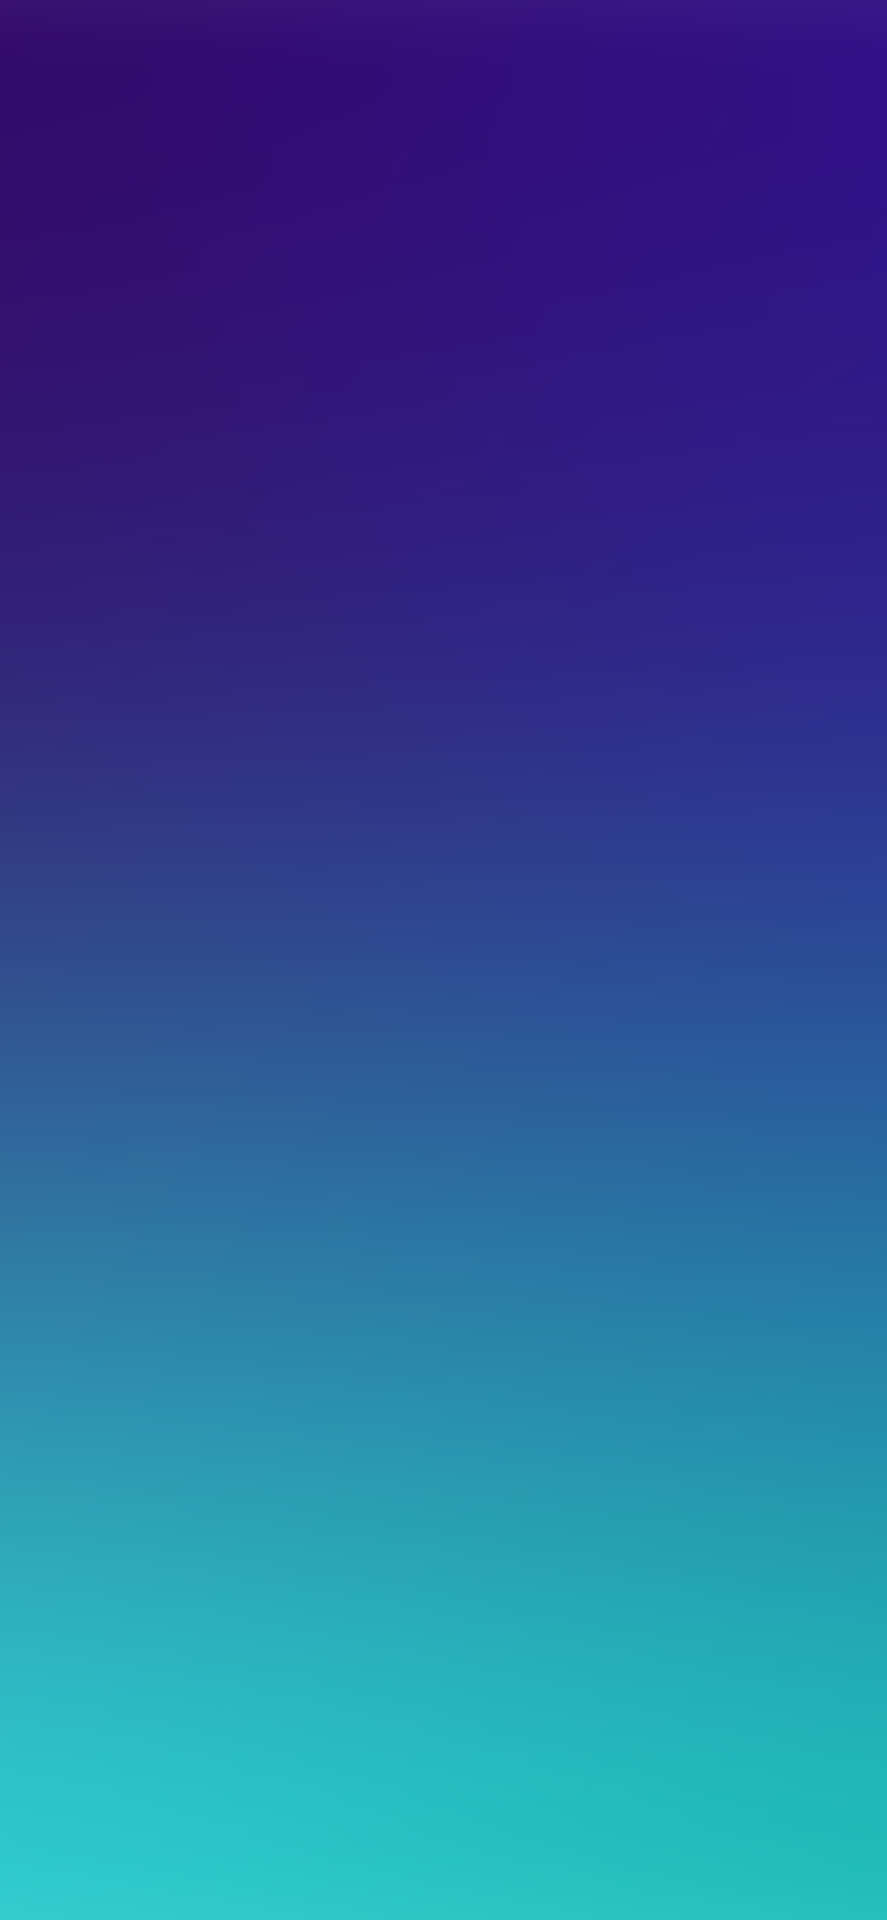 Einhintergrund Mit Blau-violettem Farbverlauf Wallpaper